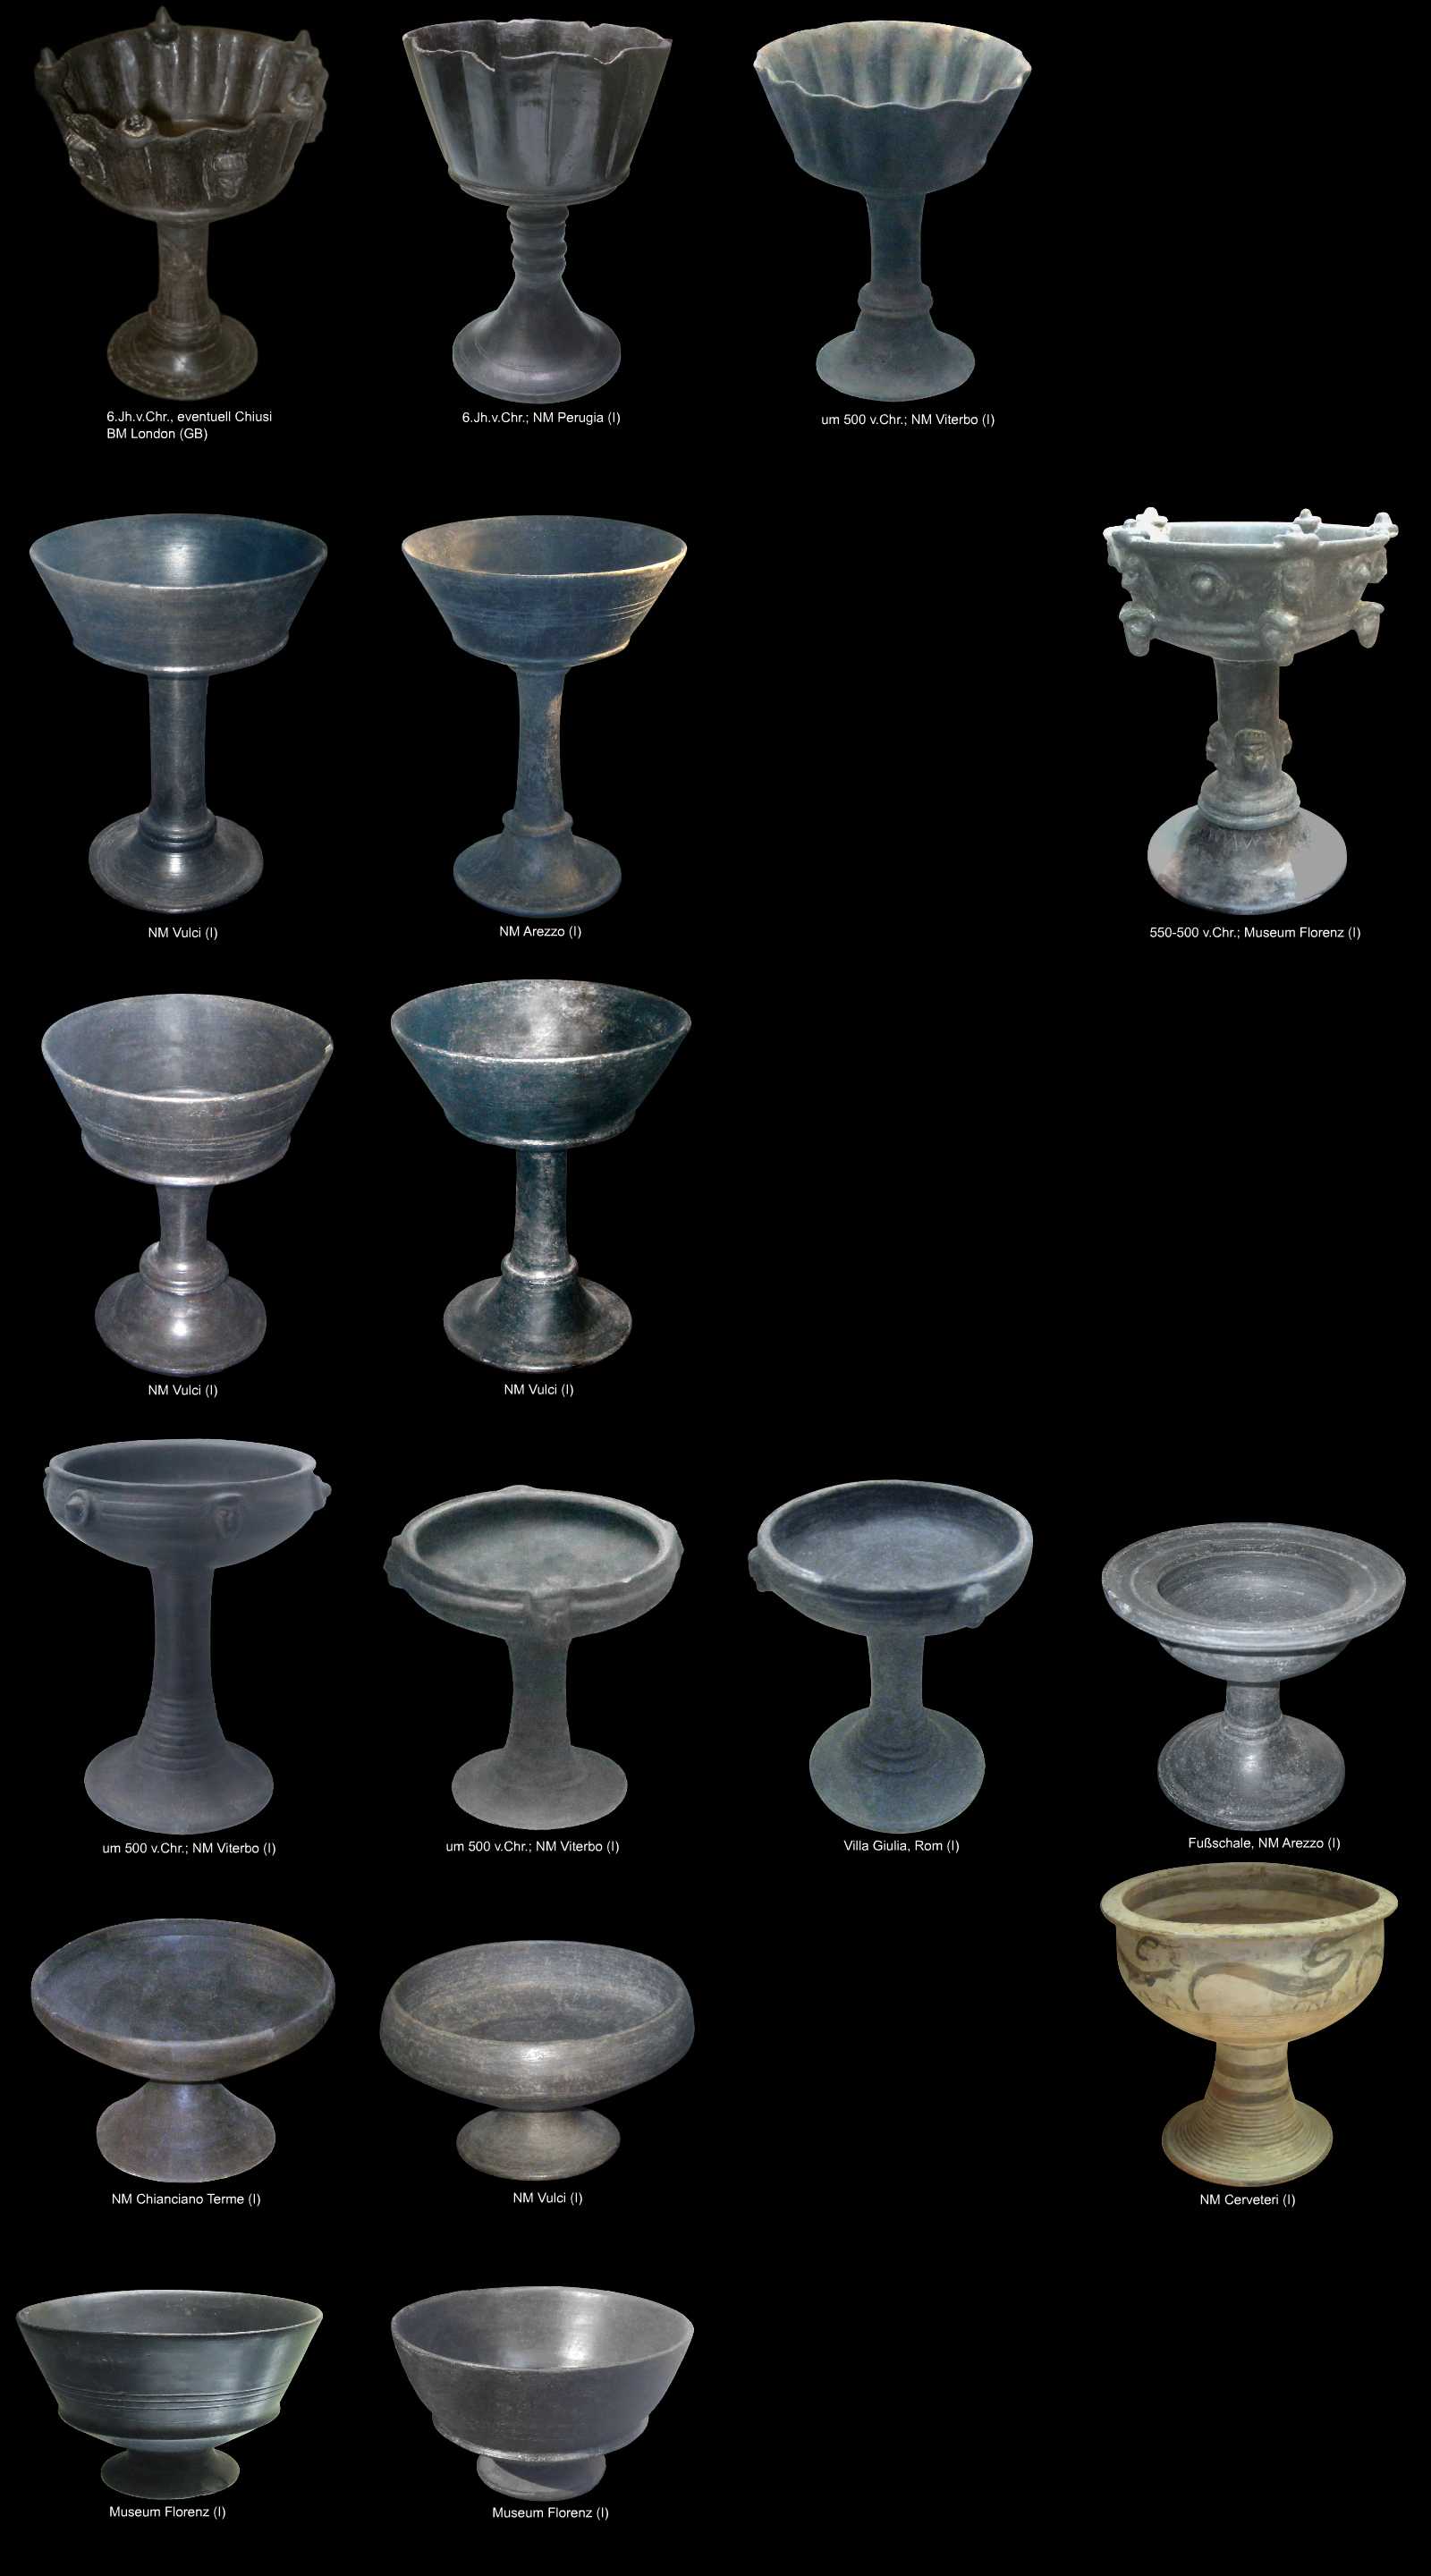 etruskische Keramikform - Kelch